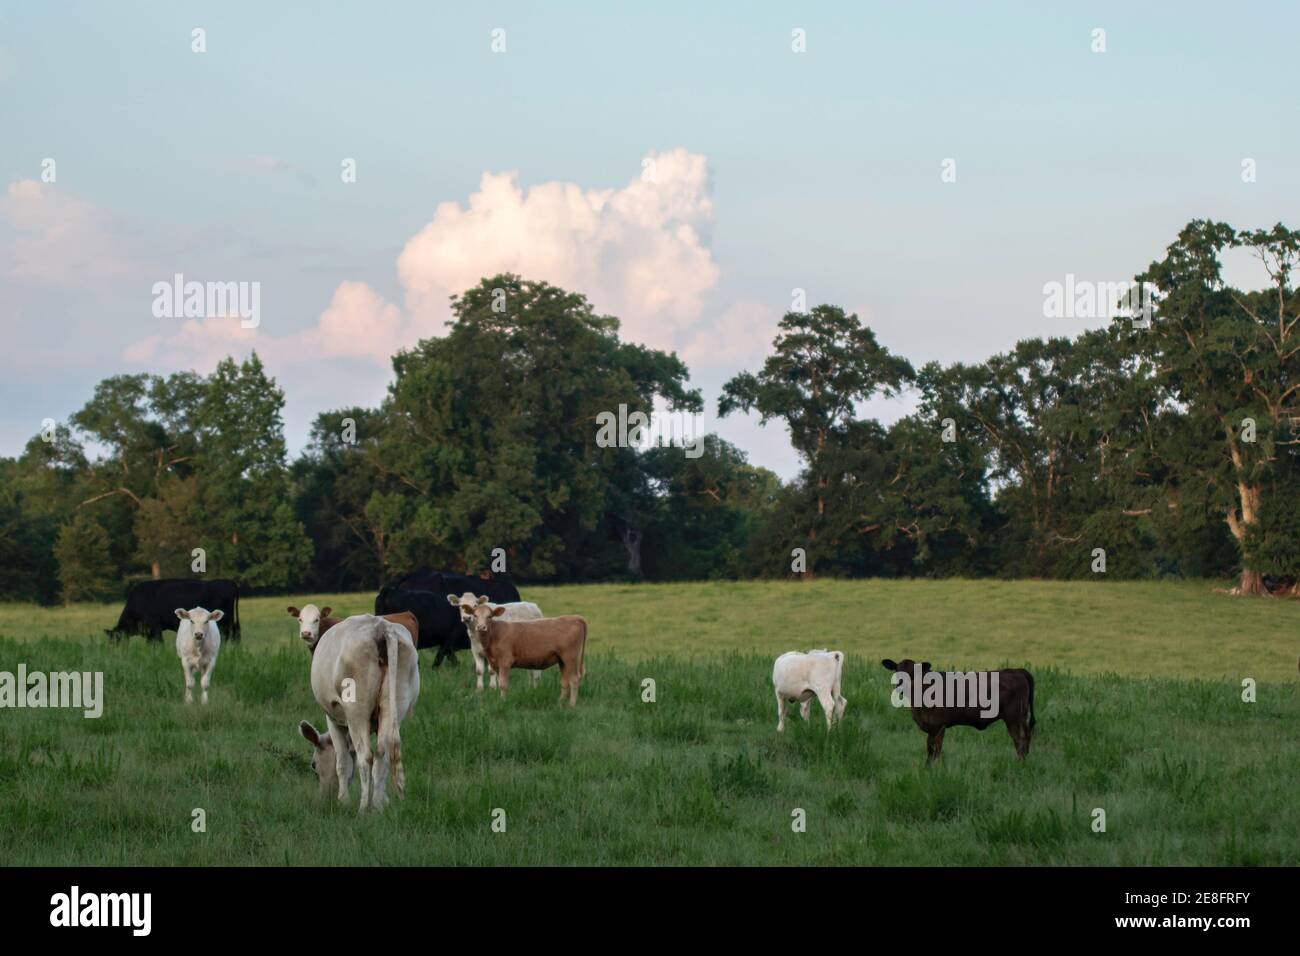 Paesaggio di vacche e vitelli commerciali di manzo in un lussureggiante pascolo estivo nel fresco della sera in una giornata estiva. Foto Stock